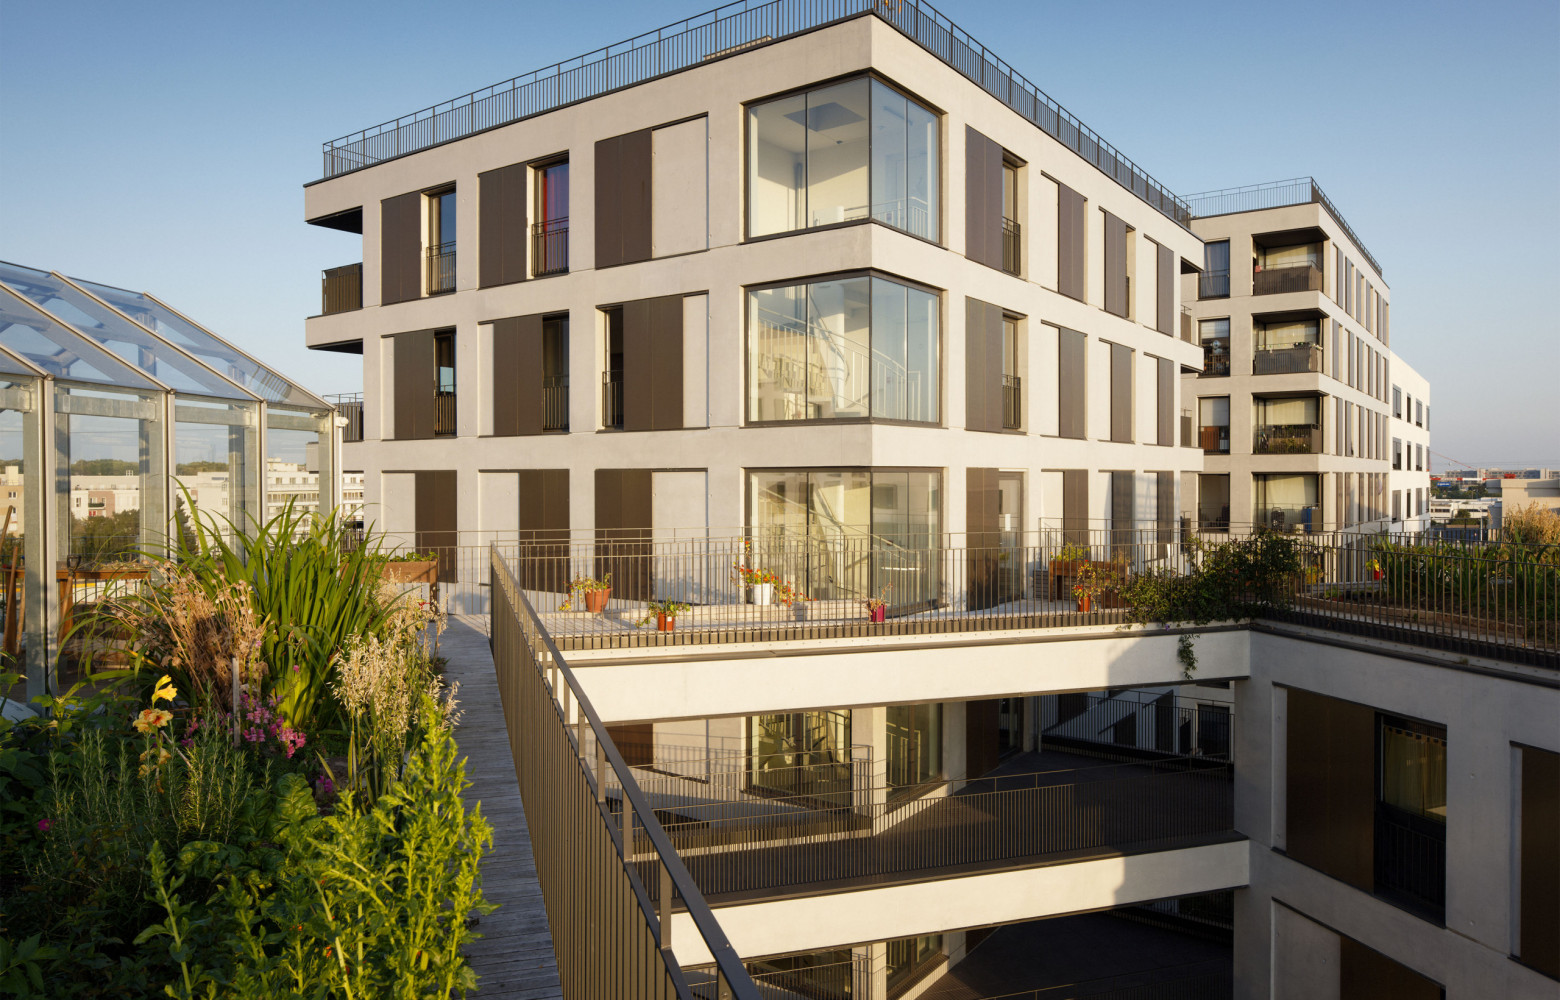 À Chevilly-Larue (94), ces logements offrent différents types d’espace libre : terrasses plantées, jardins en pleine terre, toitures...